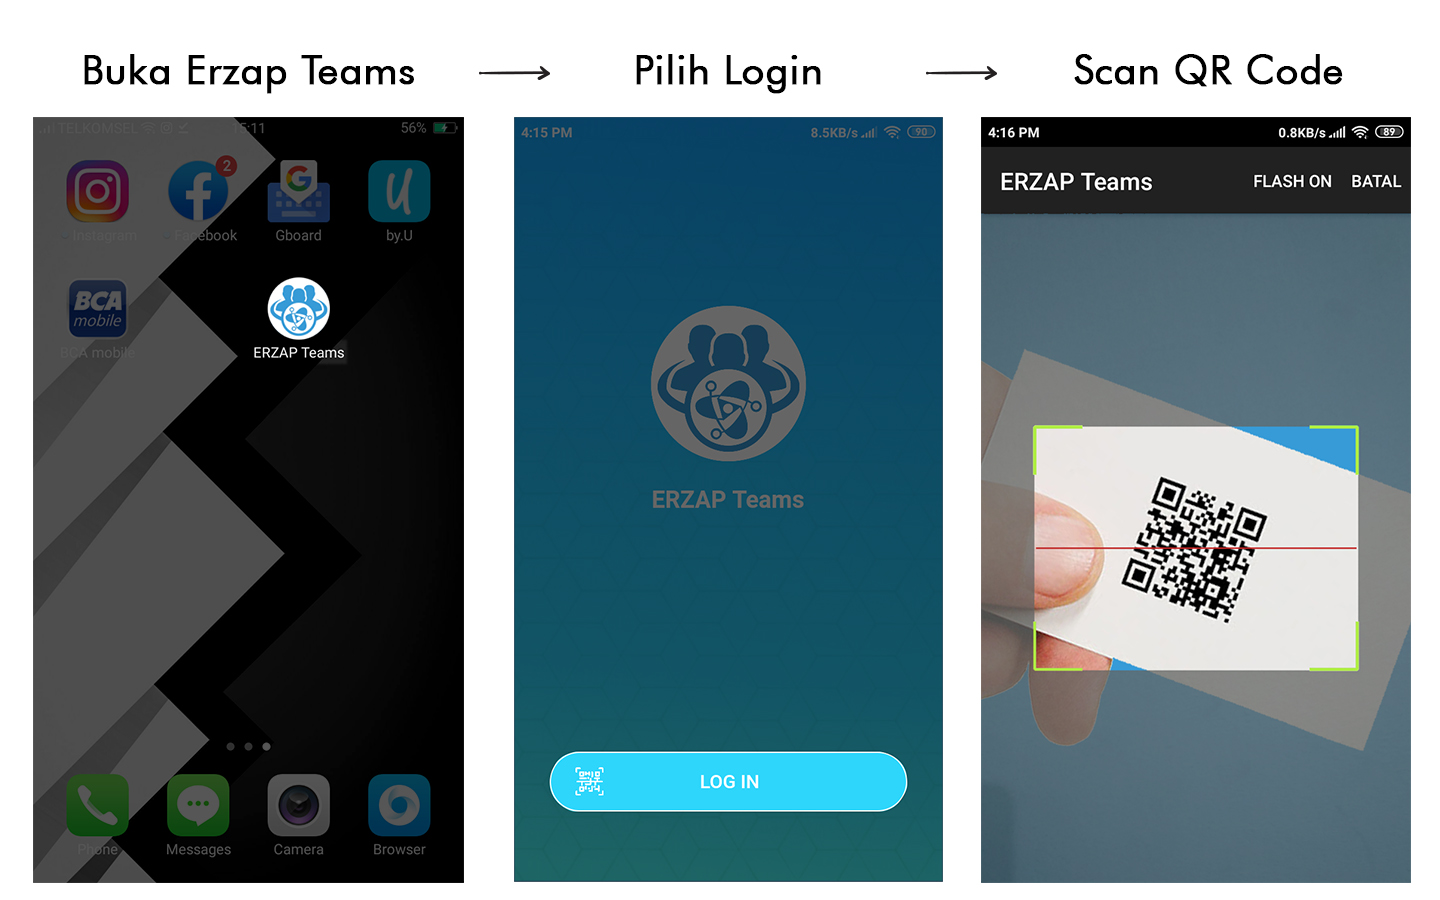 buka aplikasi erzap teams, lalu pilih login, lalu pilih scan QR